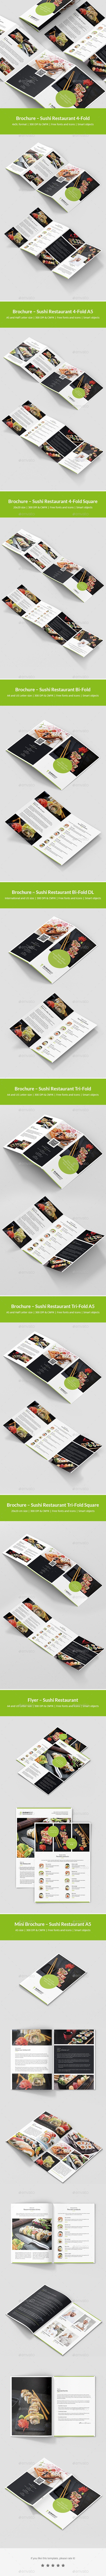 رستوران سوشی – مجموعه قالب های چاپی بروشور  10 در 1